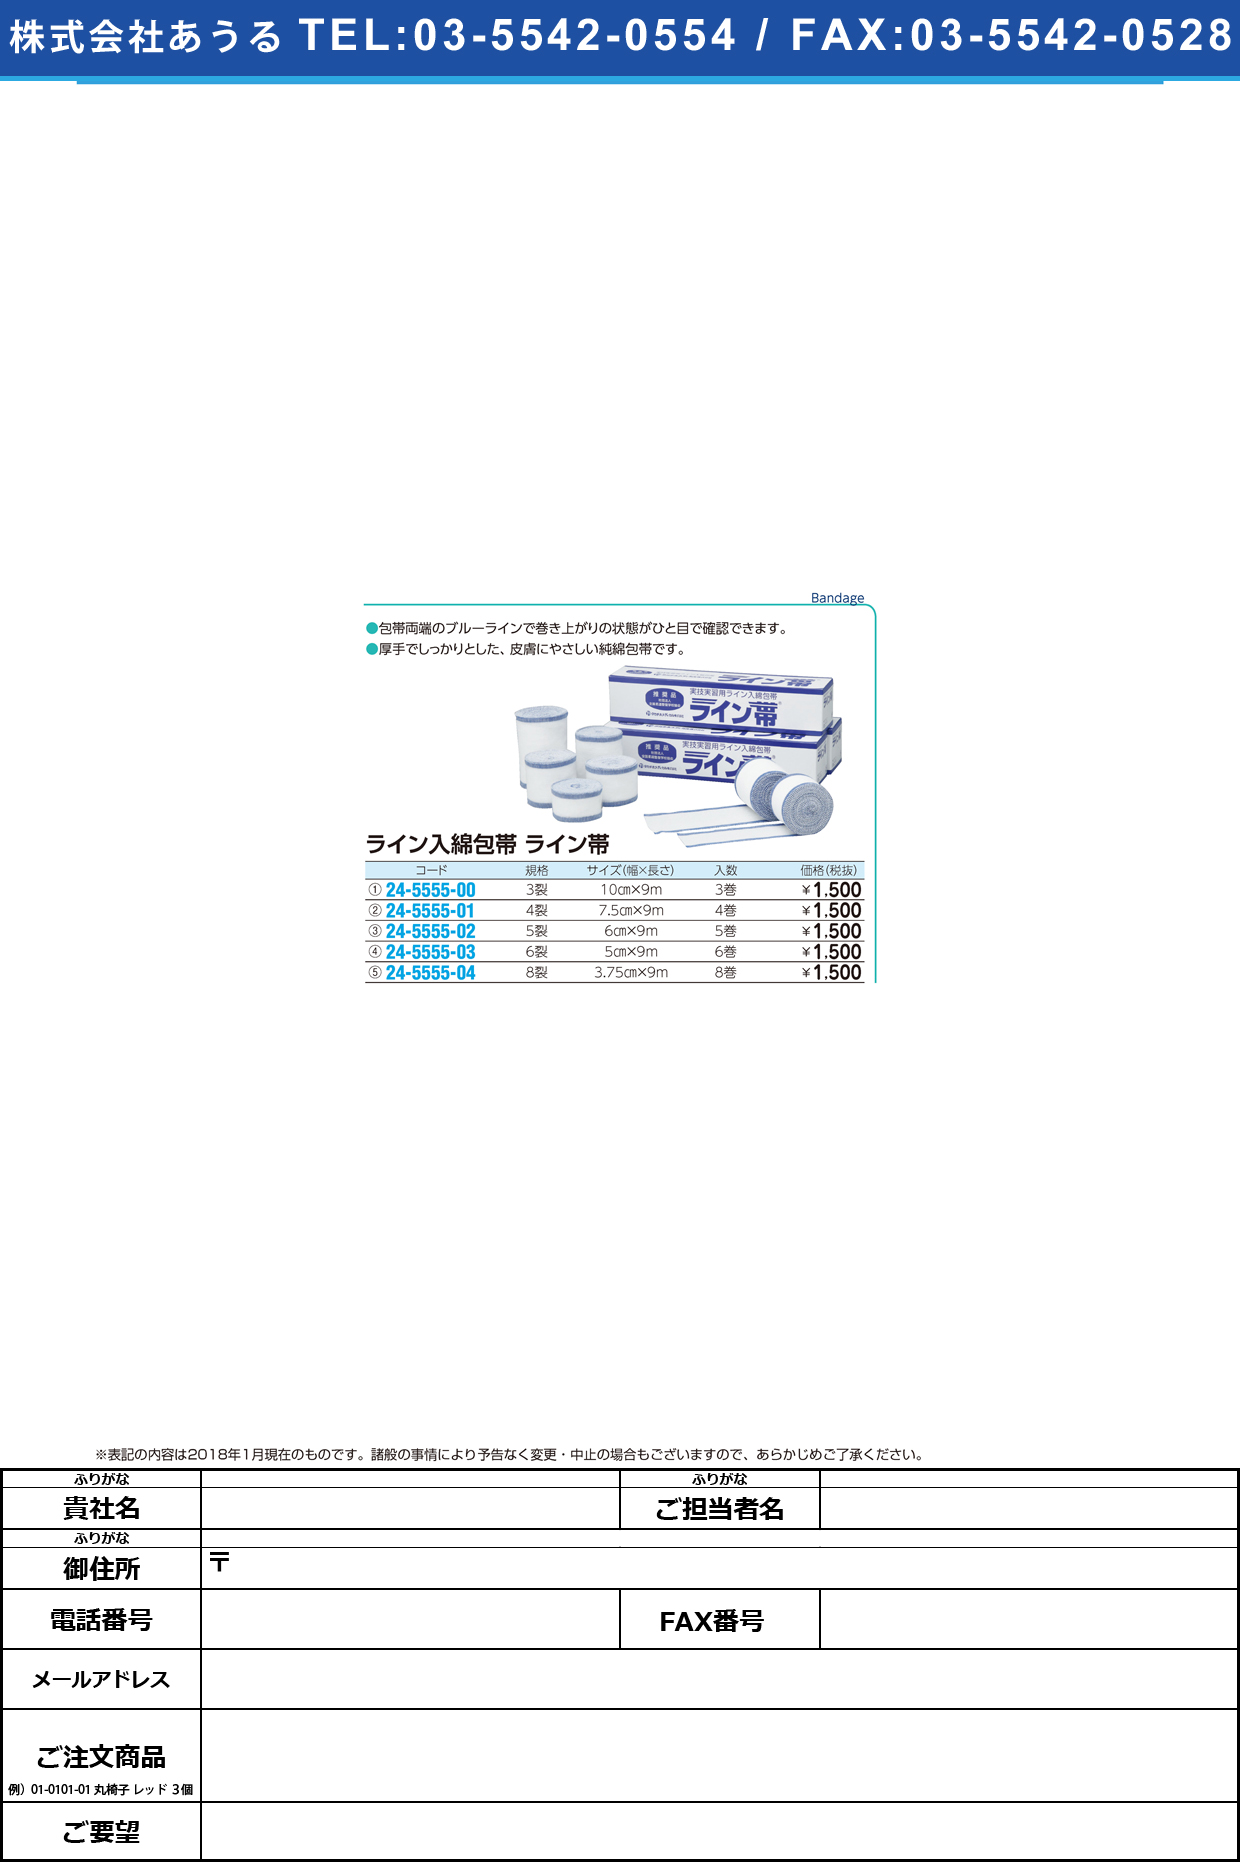 (24-5555-04)ライン帯ＳＰ８裂 TB-8R(3.75CMX9M)8ｶﾝ ﾗｲﾝﾀｲSP8ﾚﾂ【1箱単位】【2019年カタログ商品】